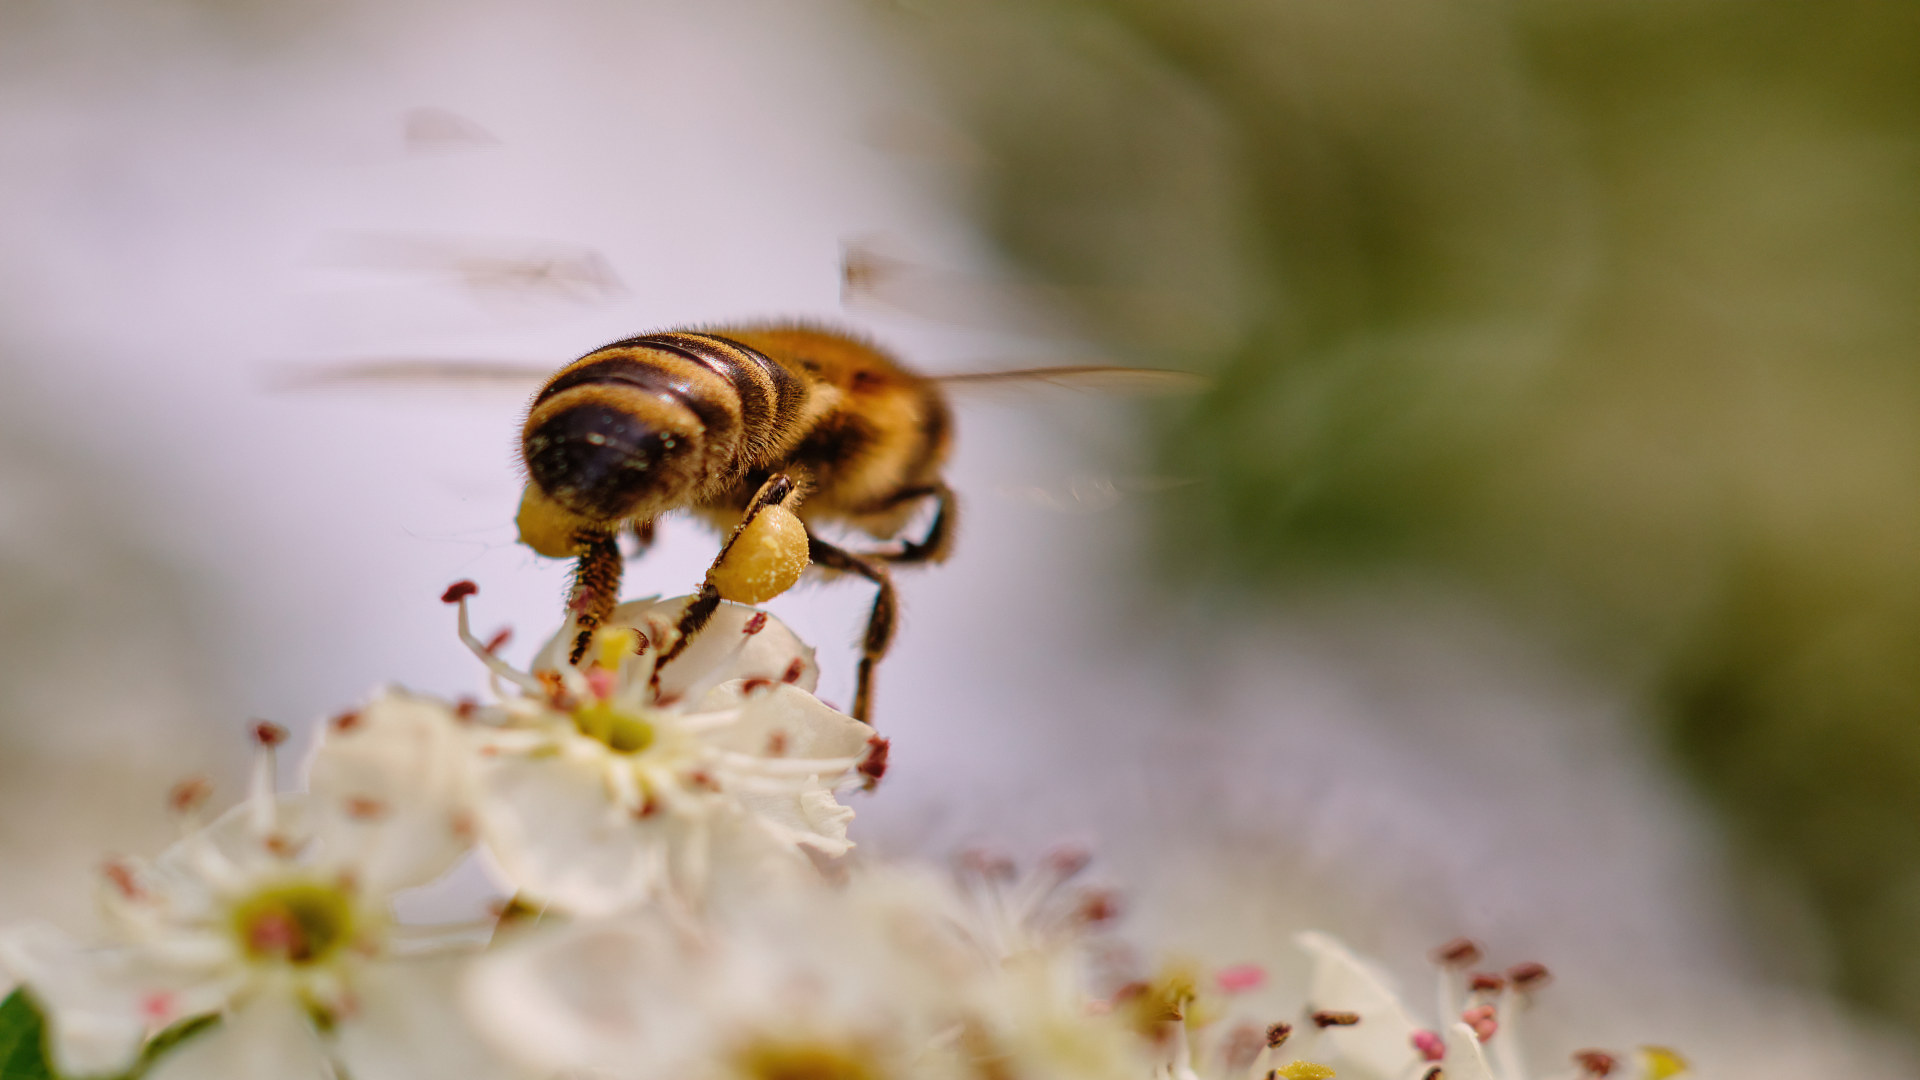 si-se-demuestra-los-efectos-nocivos-para-las-abejas-bruselas-propone-prohibir-los-plagucidas-1920.jpg